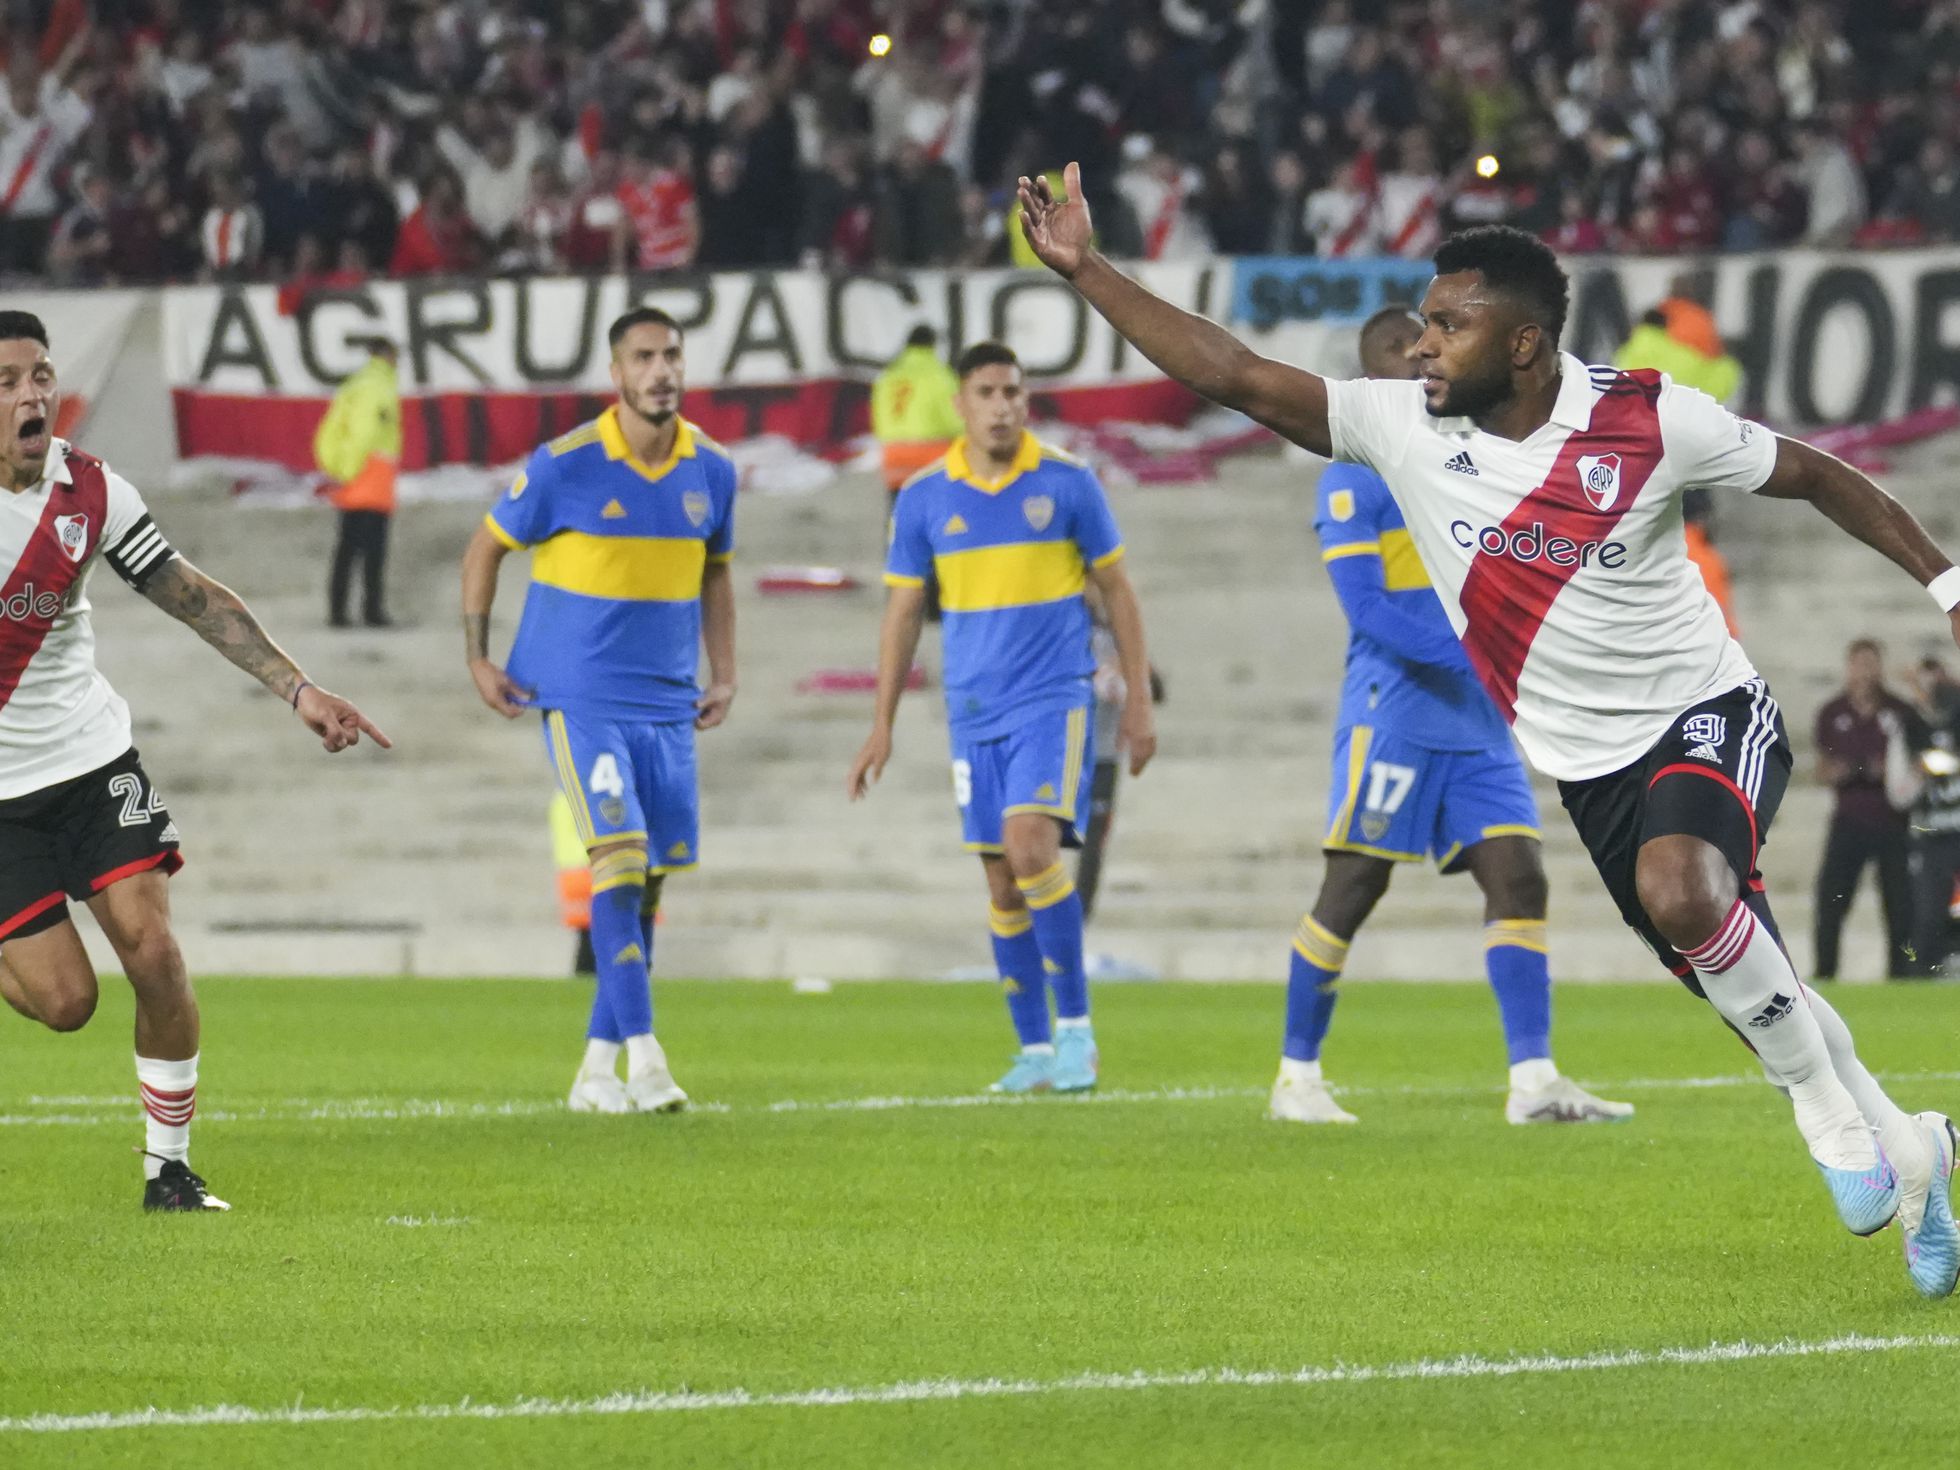 Los superclásicos argentinos entre River Plate y Boca Juniors son cada vez  más colombianos